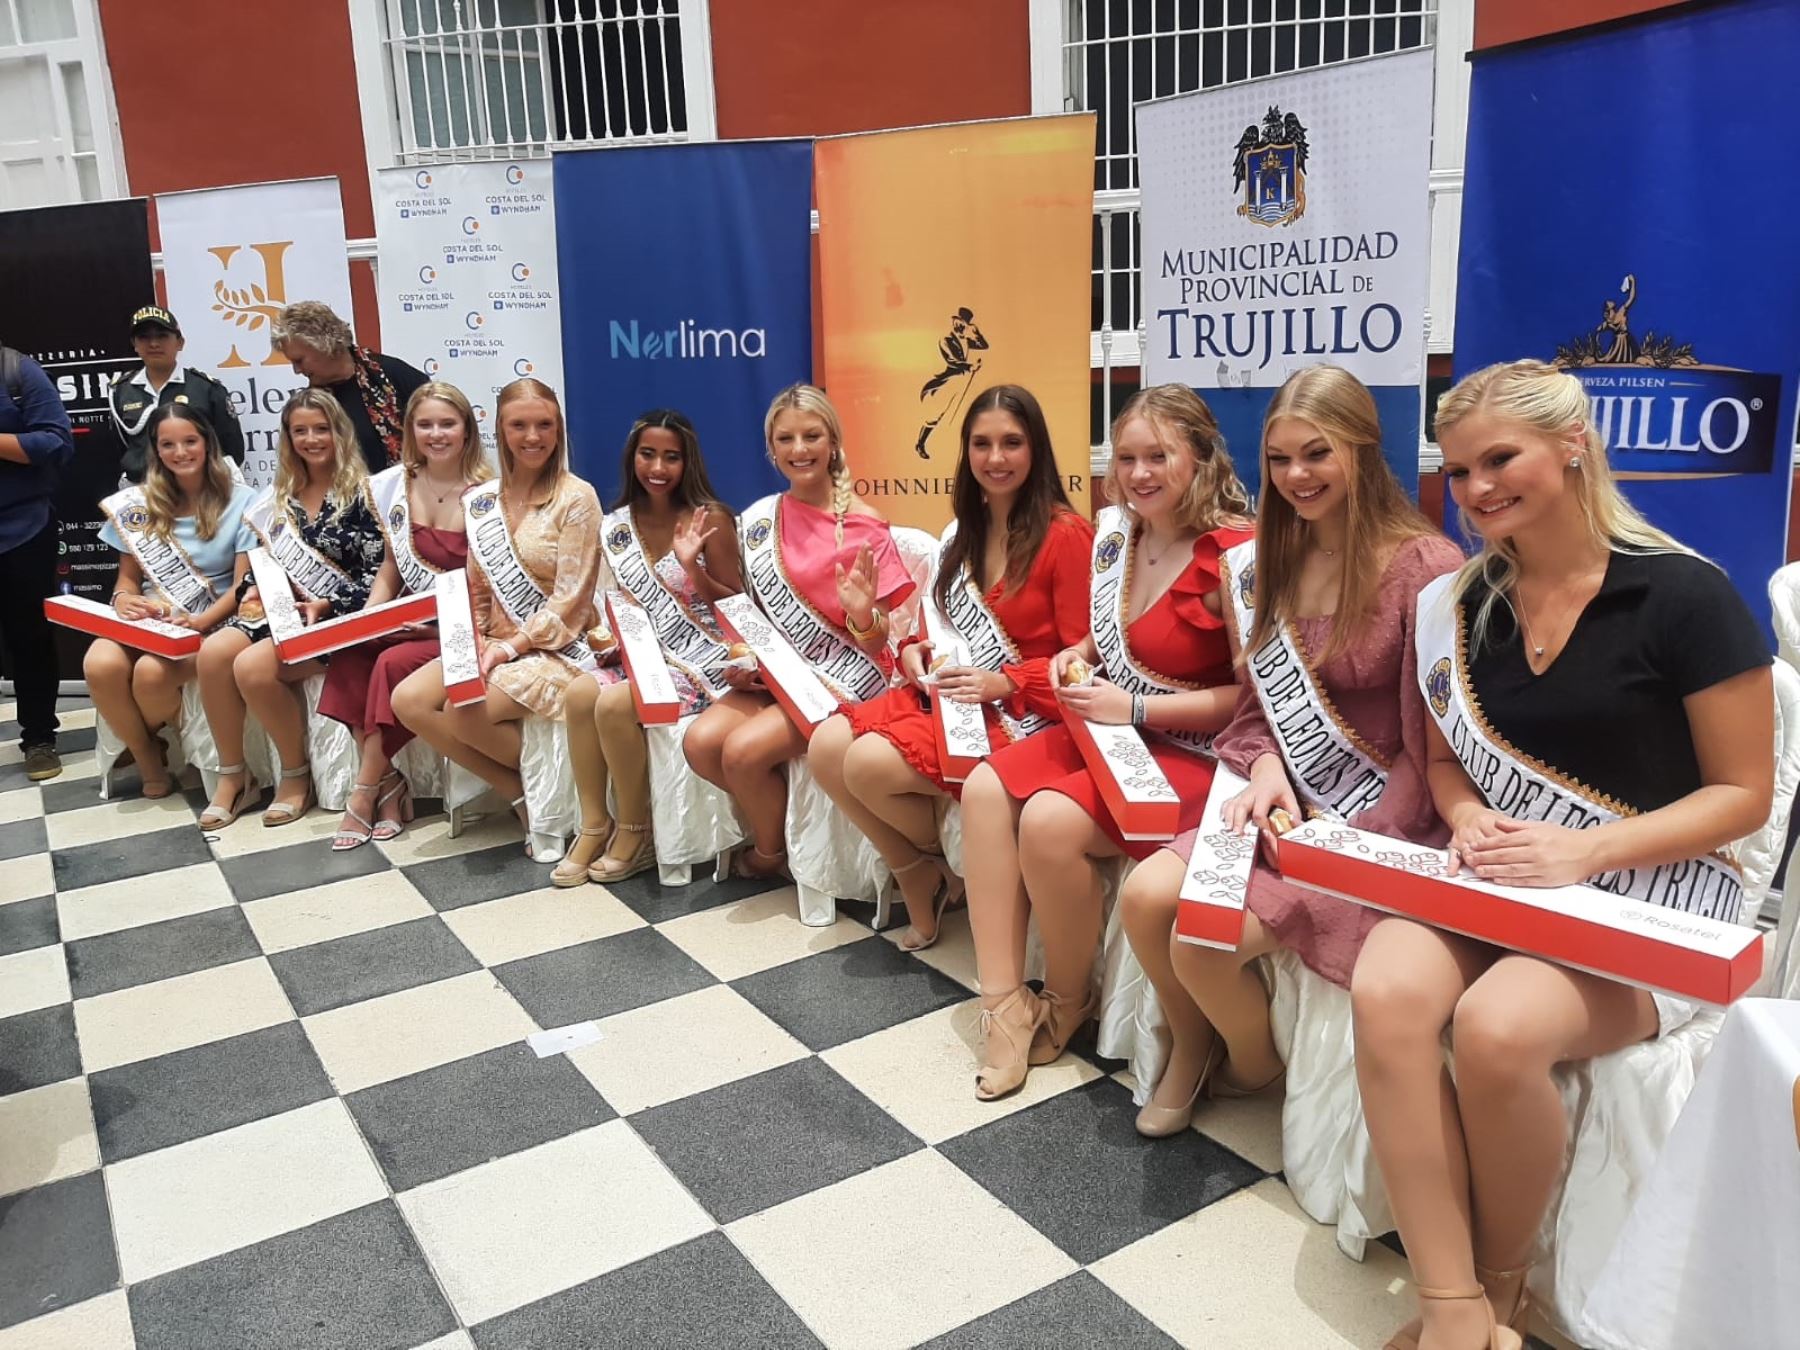 Reinas y bastoneras internacionales participarán del 70° Festival Internacional de Primavera (FIP) que se celebra esta semana en Trujillo. Foto: Luis Puell